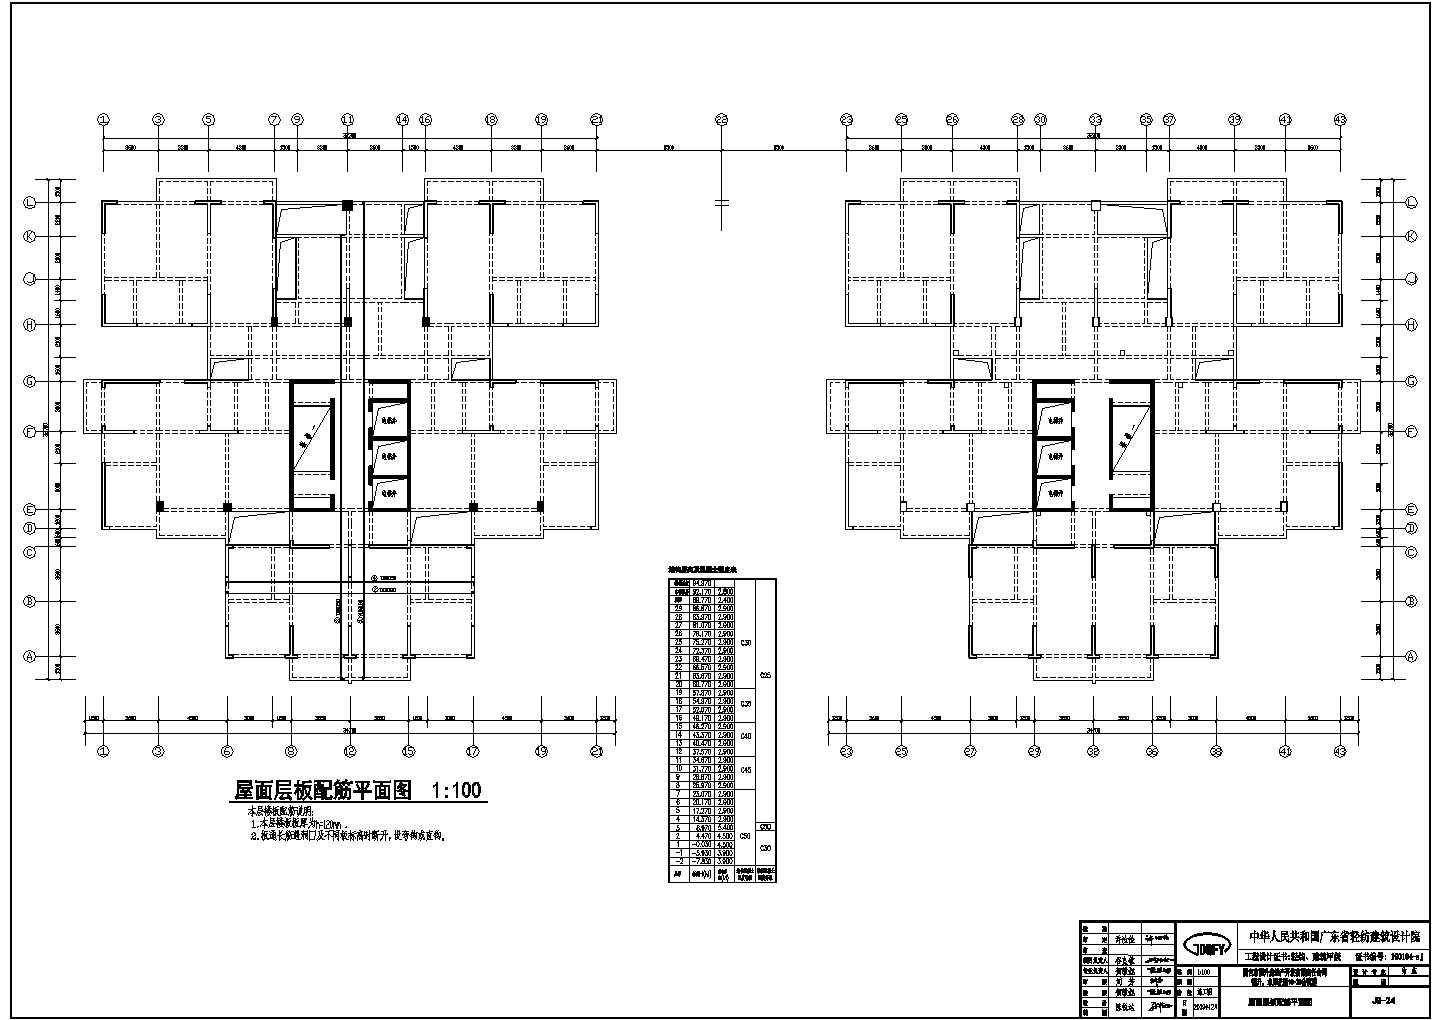 广西百色市29层剪力墙结构商住公寓楼全套结构施工图